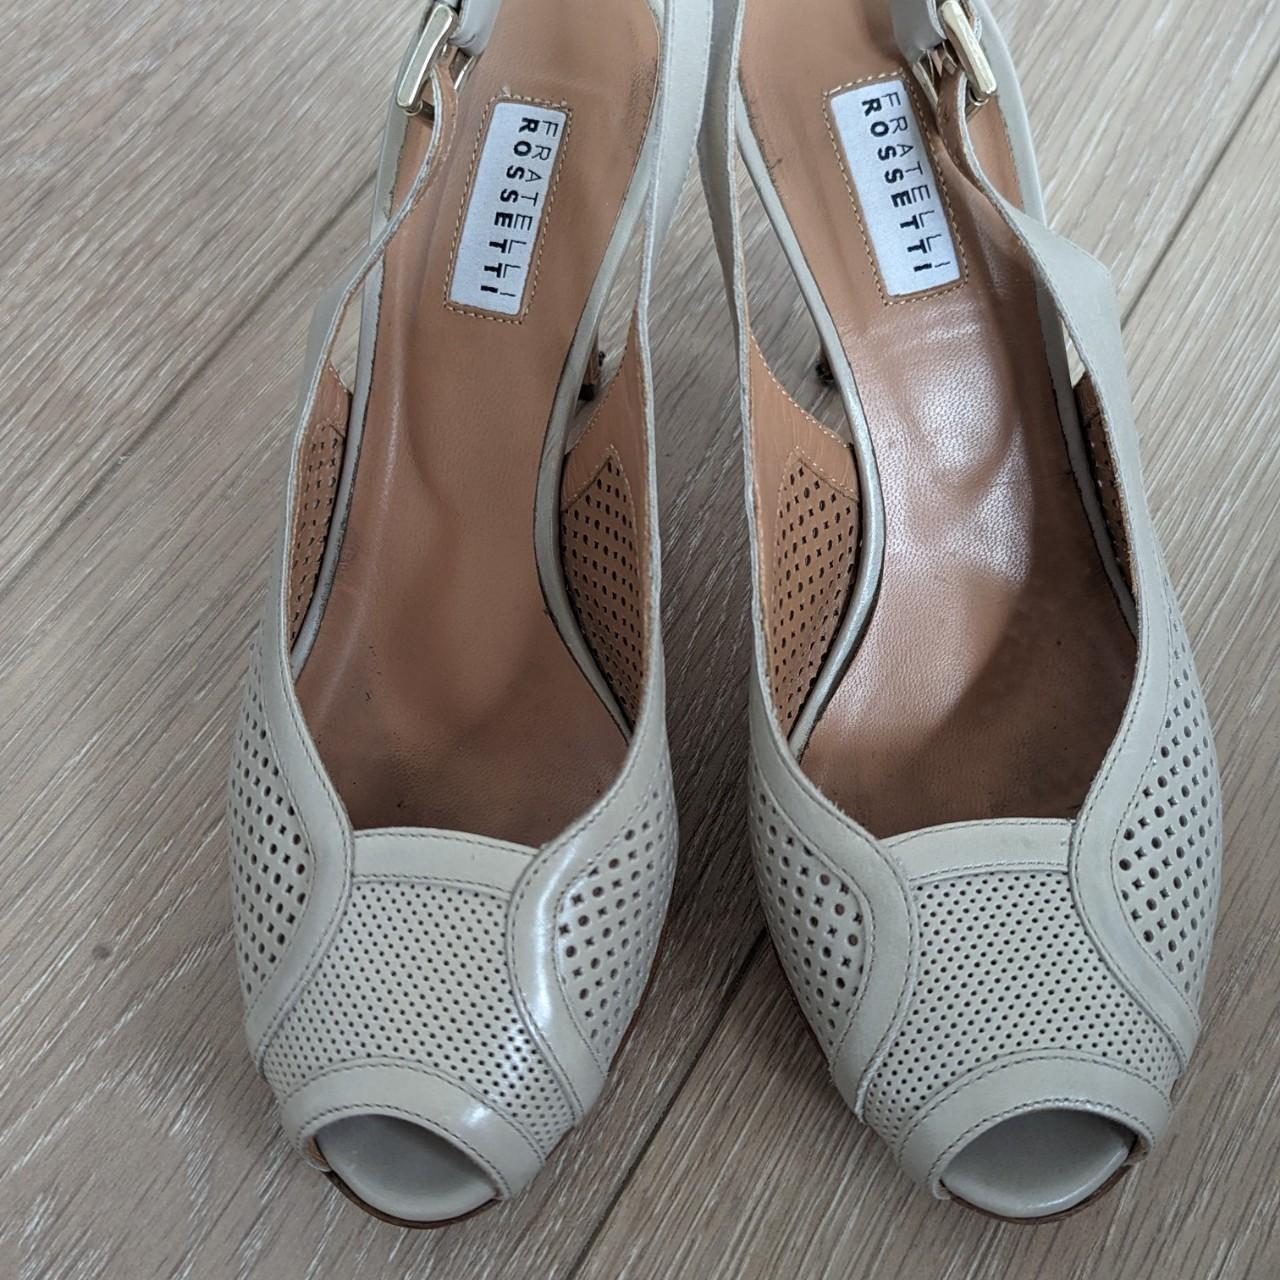 Vintage Italian heels by Fratelli Rossetti in dove... - Depop